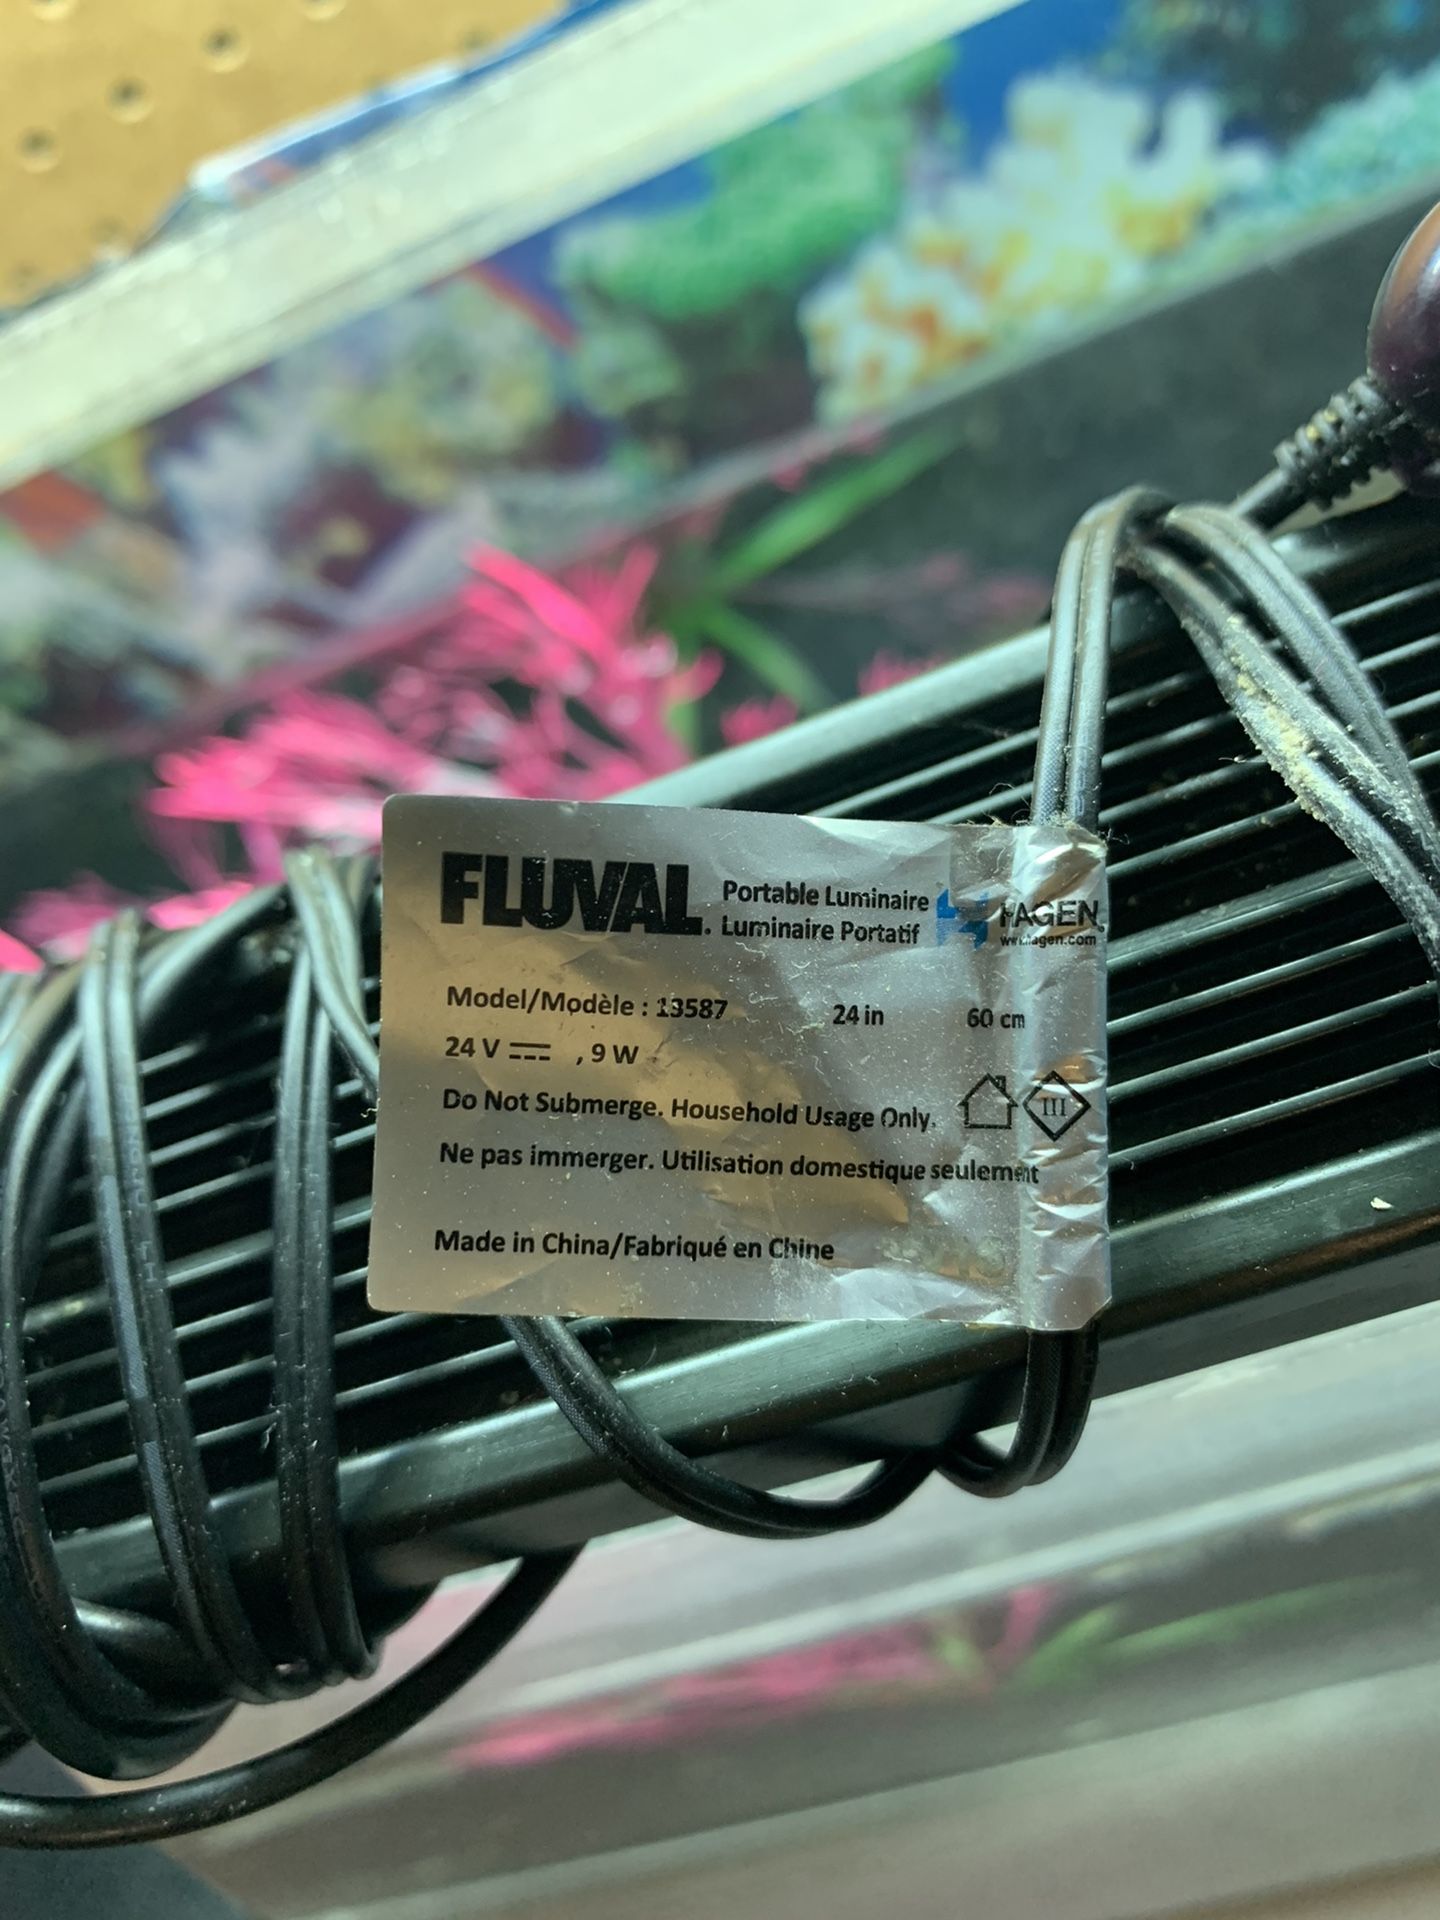 Fluval led 24 inches light